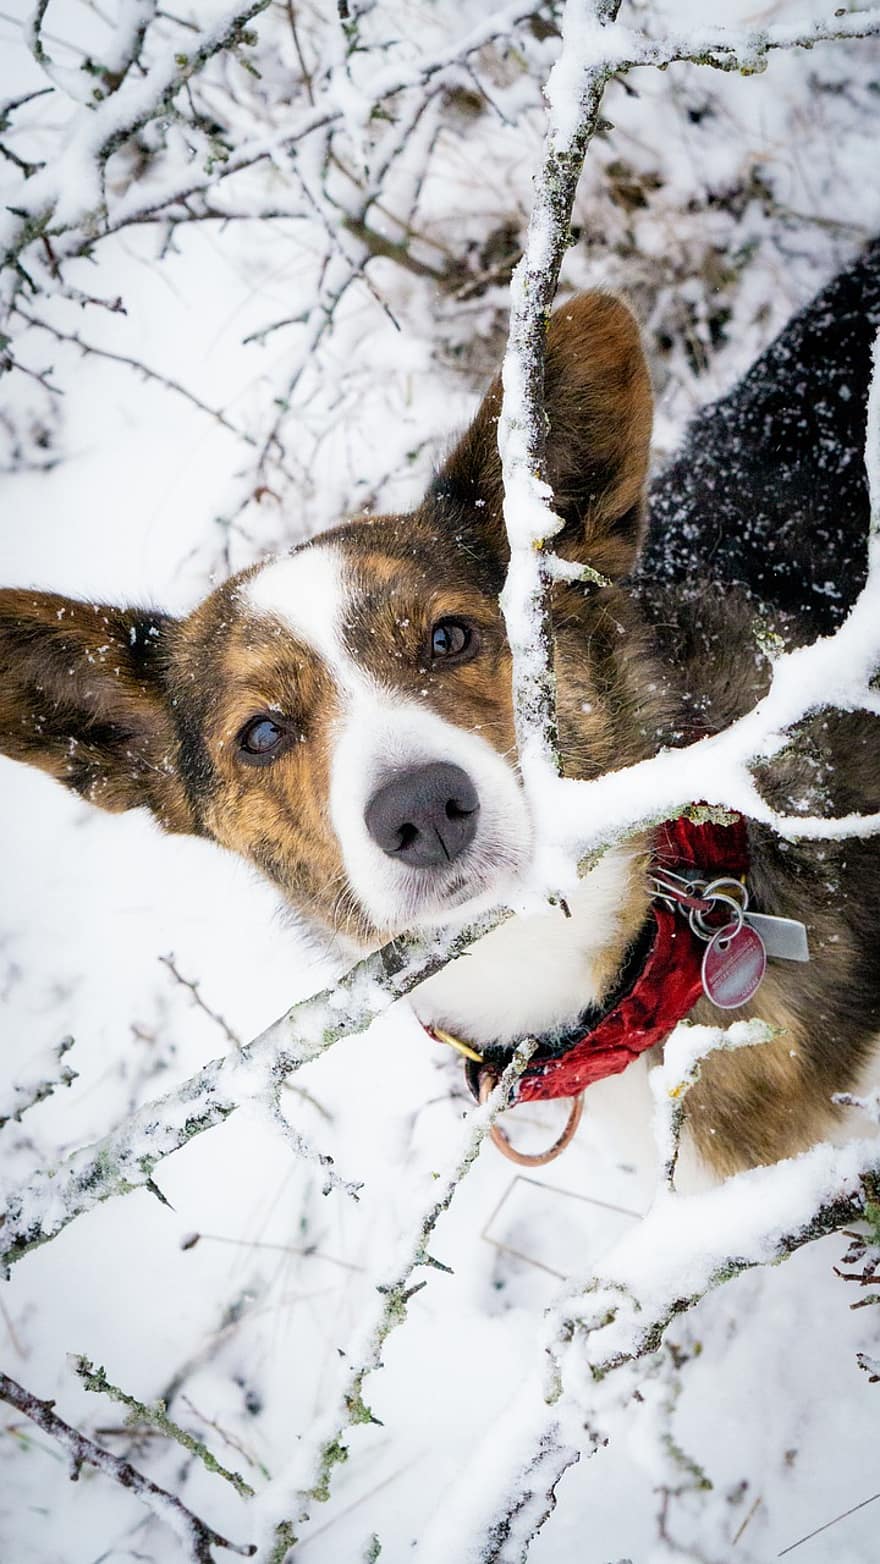 Corgi, câine, zăpadă, pembroke welsh corgi, animal de companie, animal, câine de companie, câine de rasă pură, canin, mamifer, drăguţ